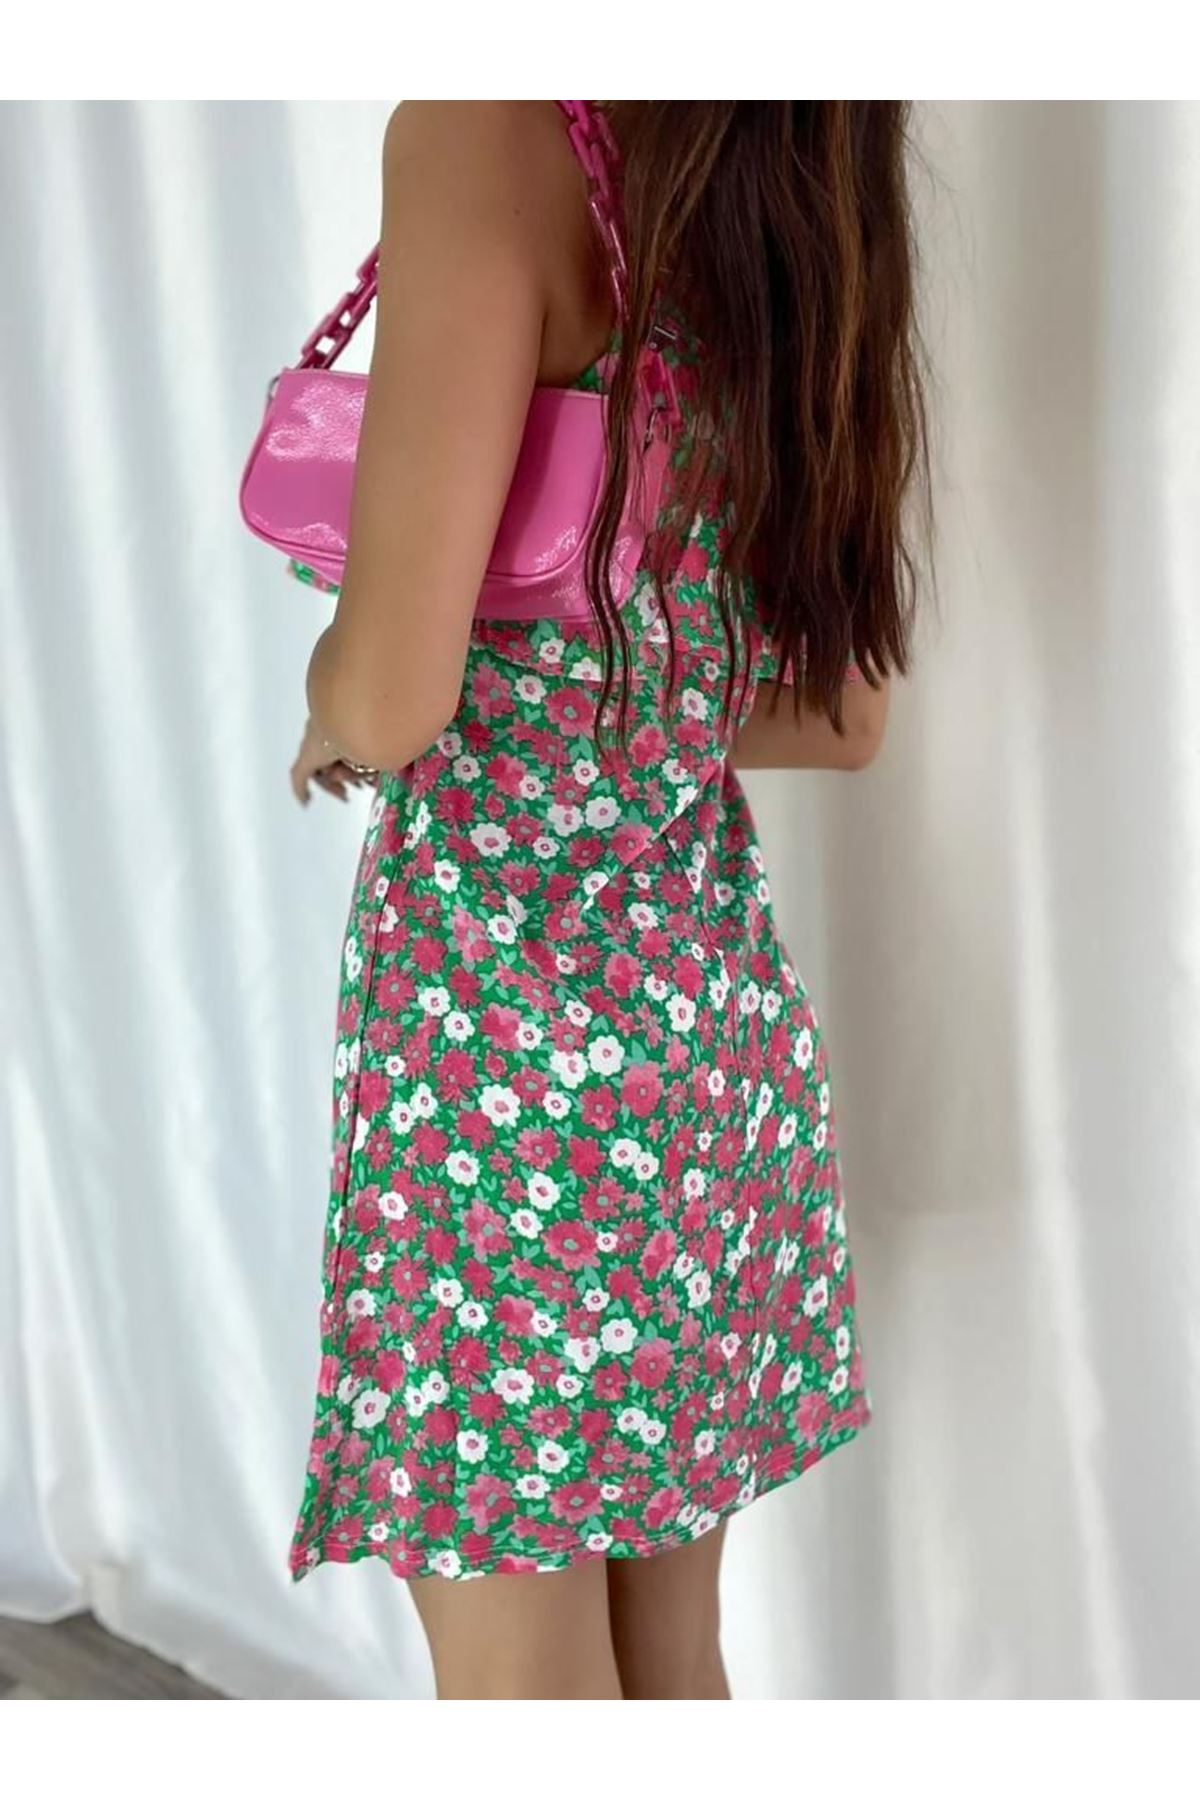 Kadın Renkli Askılı Kısa Pelerin Model Yazlık Dokuma Elbise 6C-2123